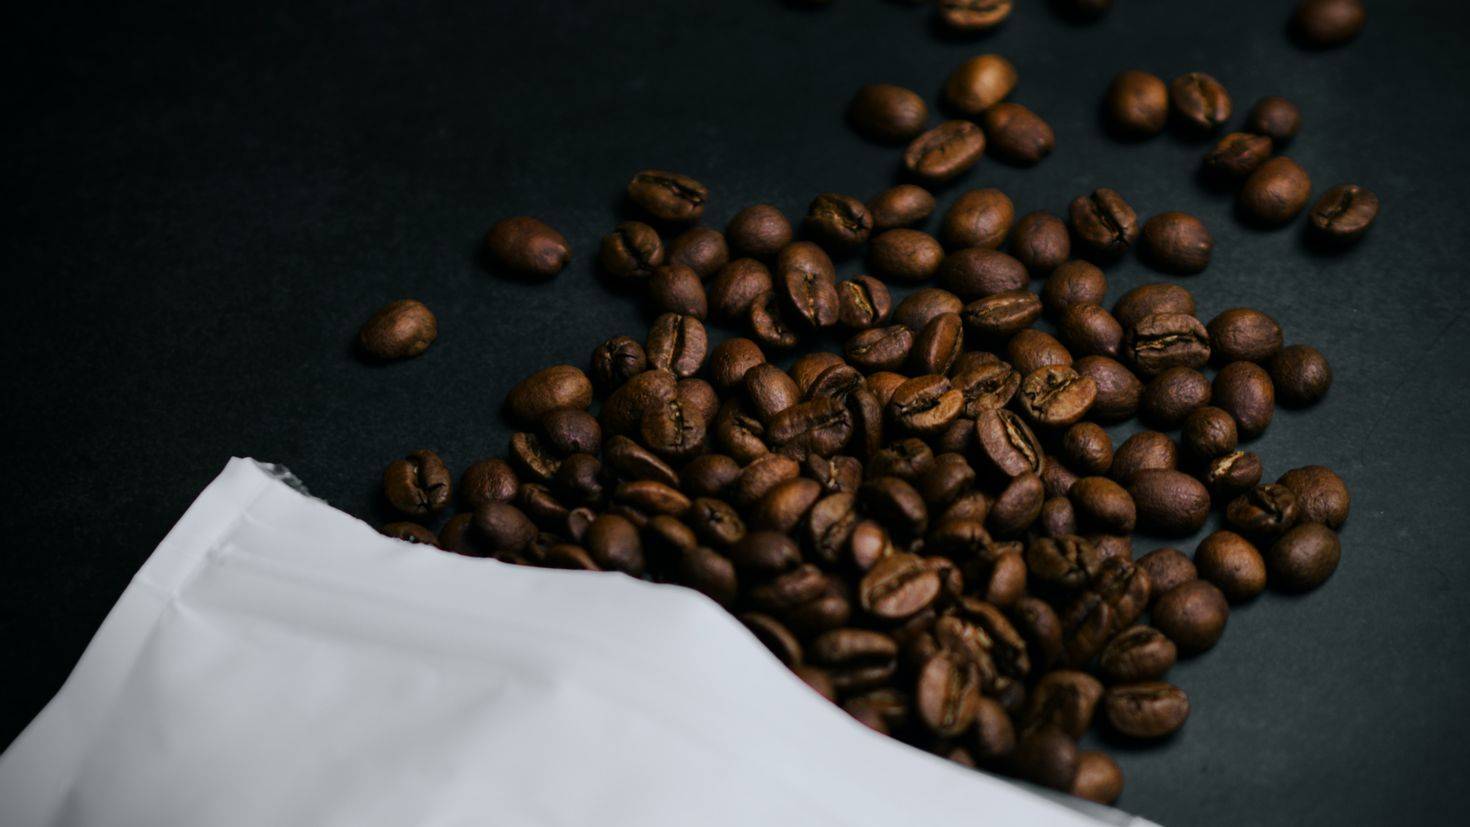 Гифки кофе — более 100 анимированных gif изображений чашек кофе